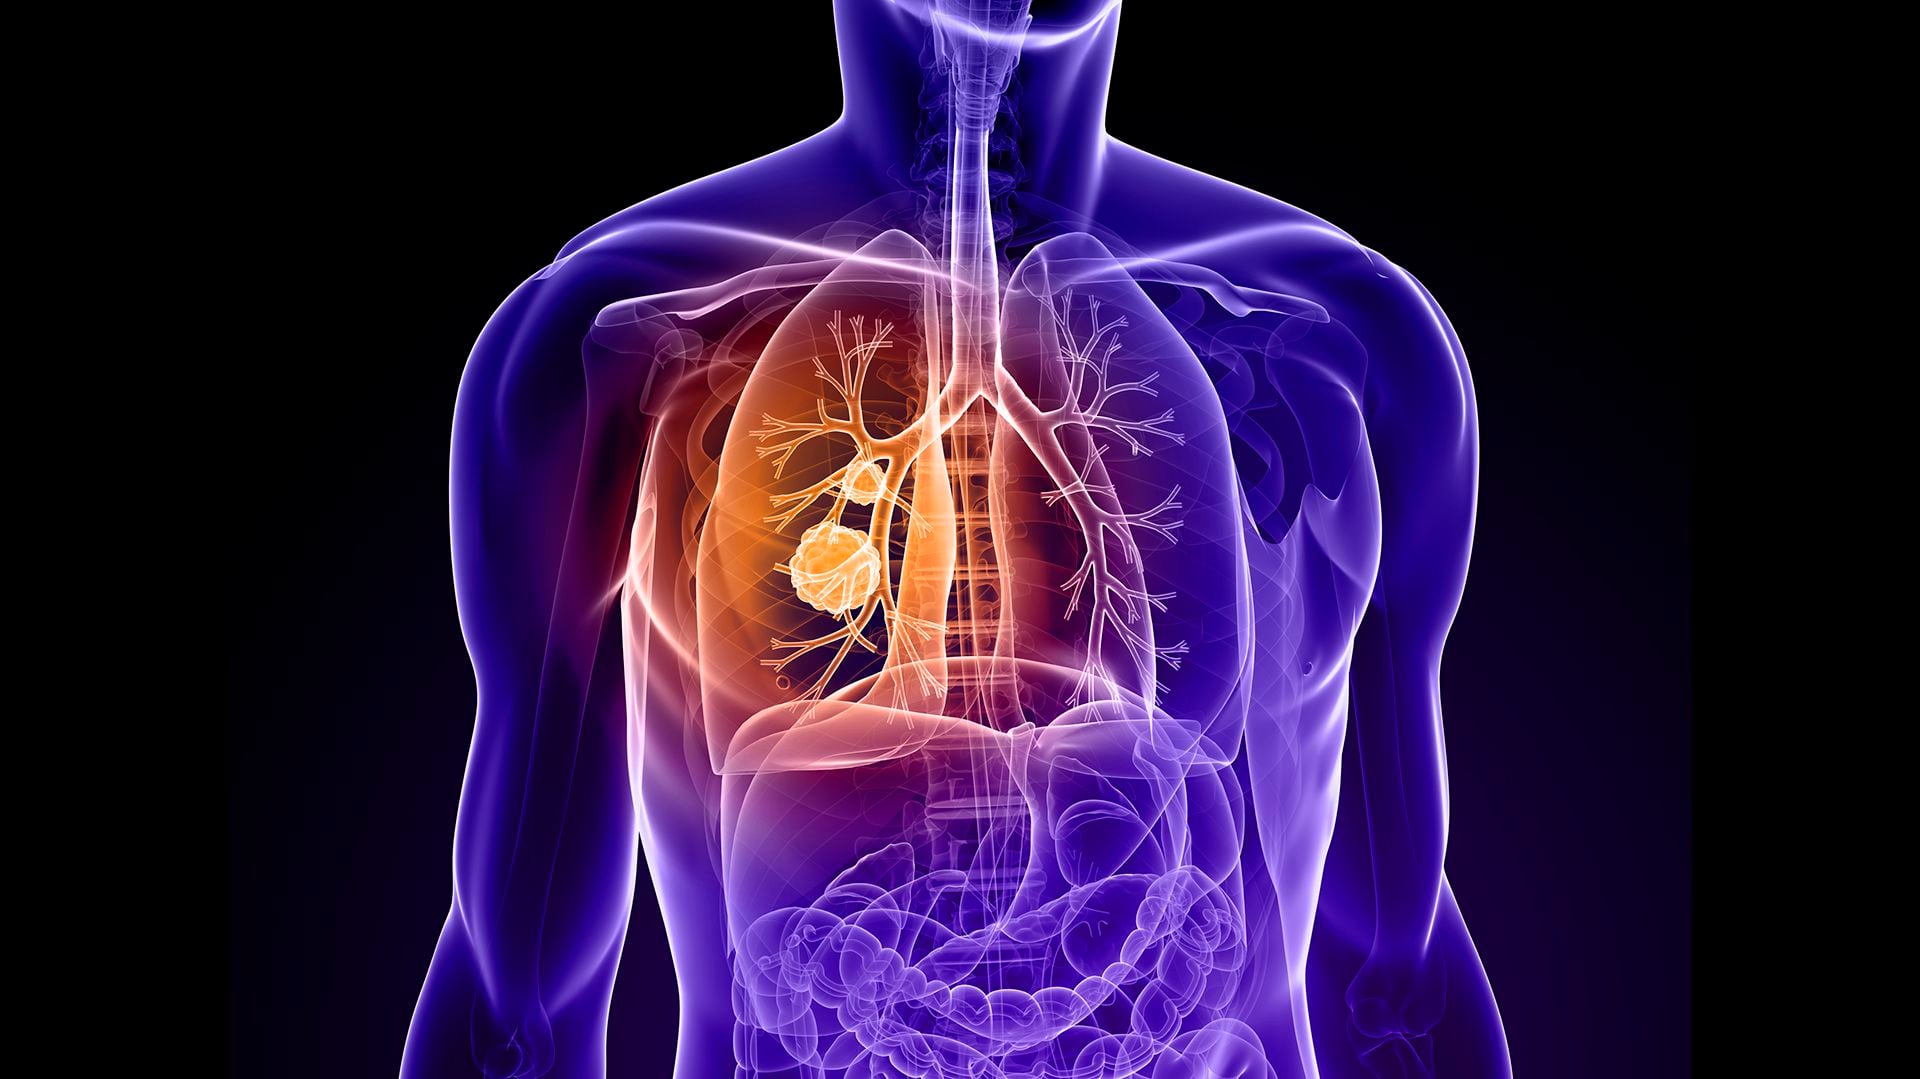 El catéter magnético se muestra prometedor ante la lucha contra el cáncer de pulmón, ofreciendo una alternativa más segura y efectiva para los pacientes
(IStock)